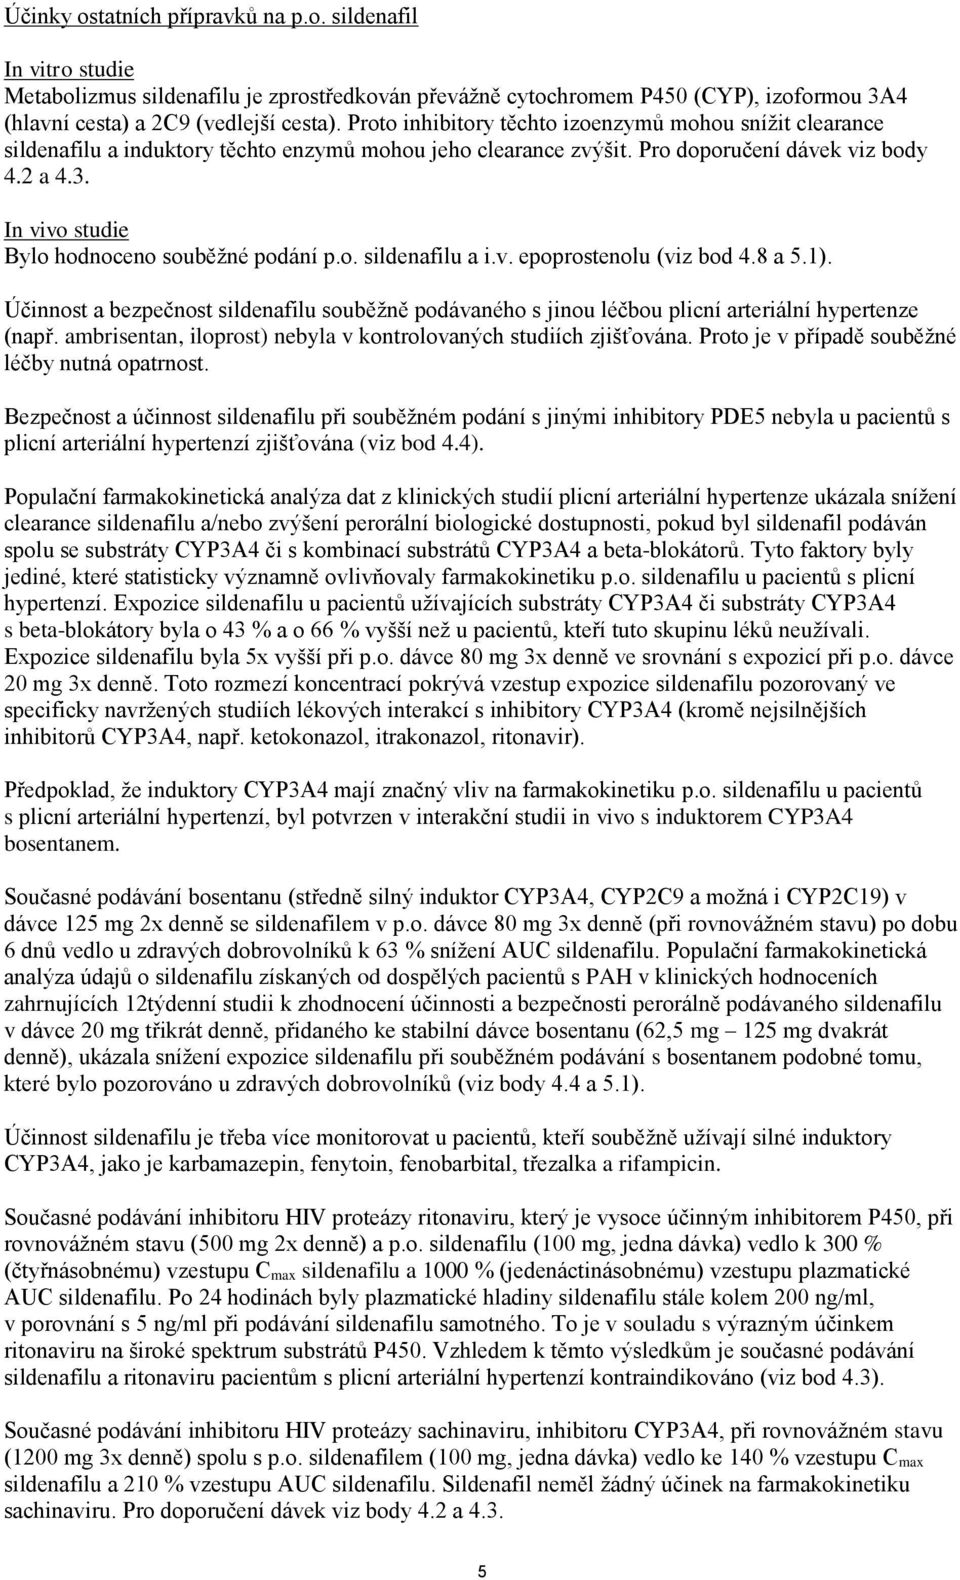 In vivo studie Bylo hodnoceno souběžné podání p.o. sildenafilu a i.v. epoprostenolu (viz bod 4.8 a 5.1).